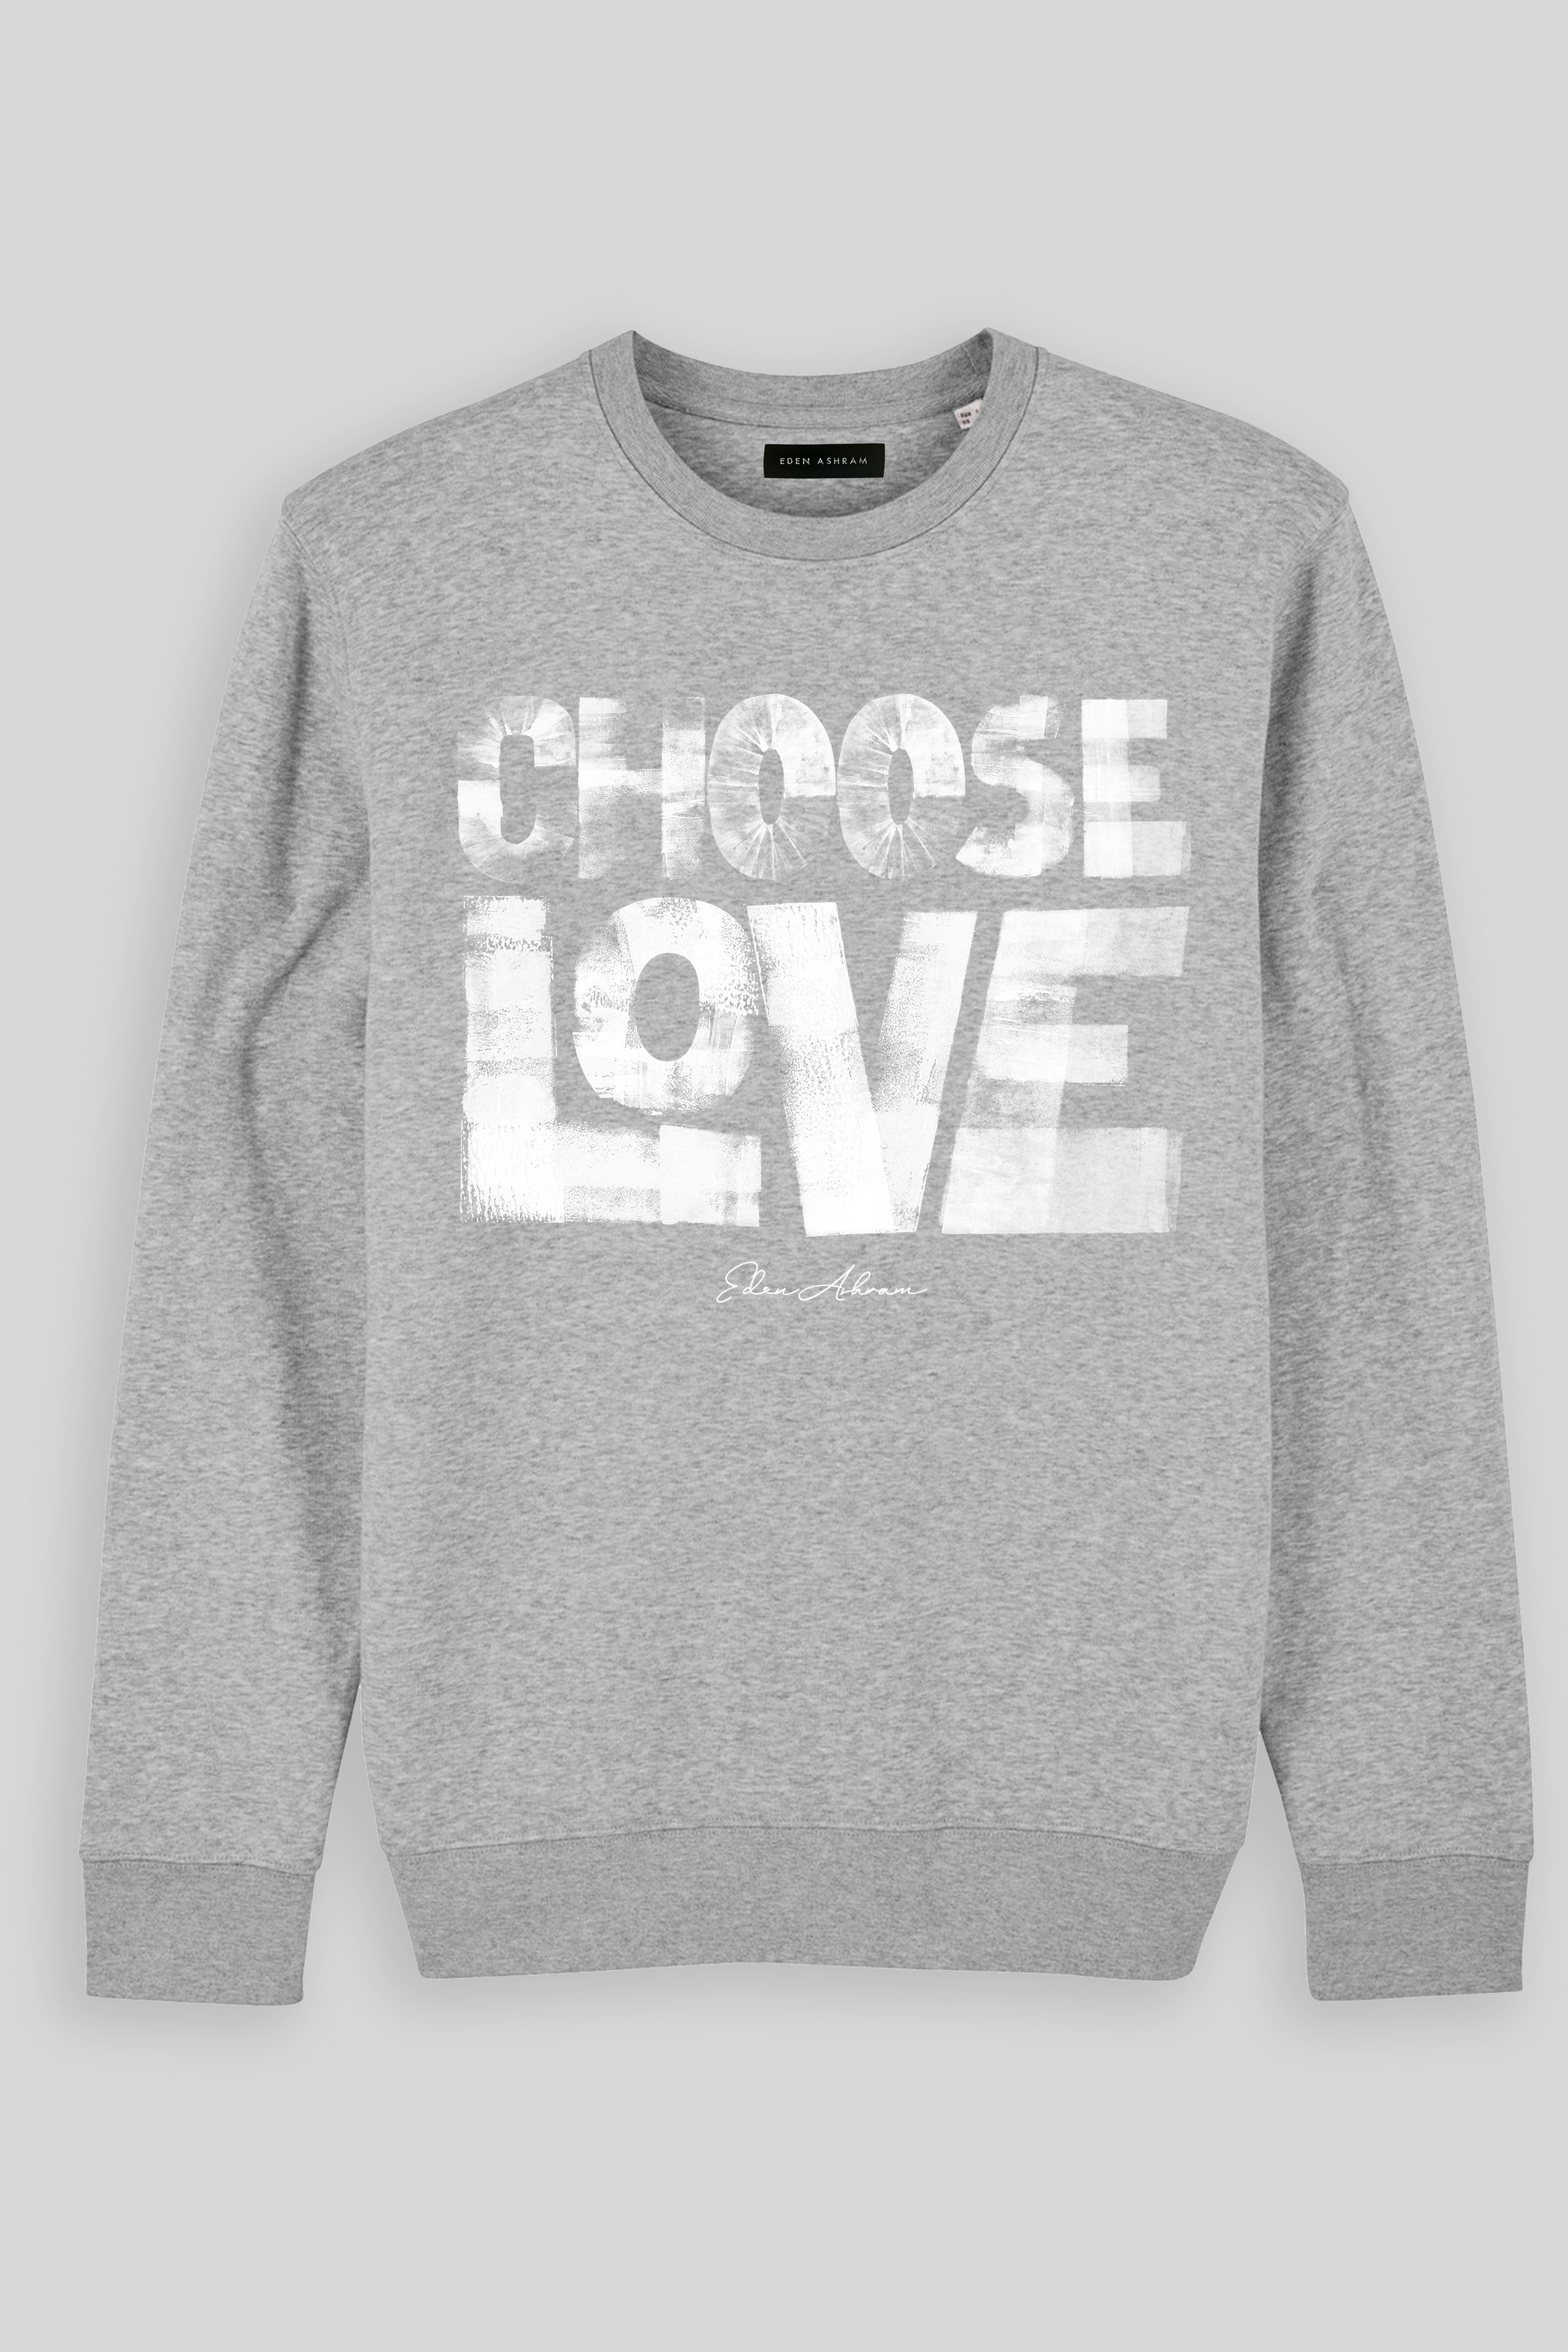 Eden Ashram Choose Love Premium Crew Neck Sweatshirt Heather Grey